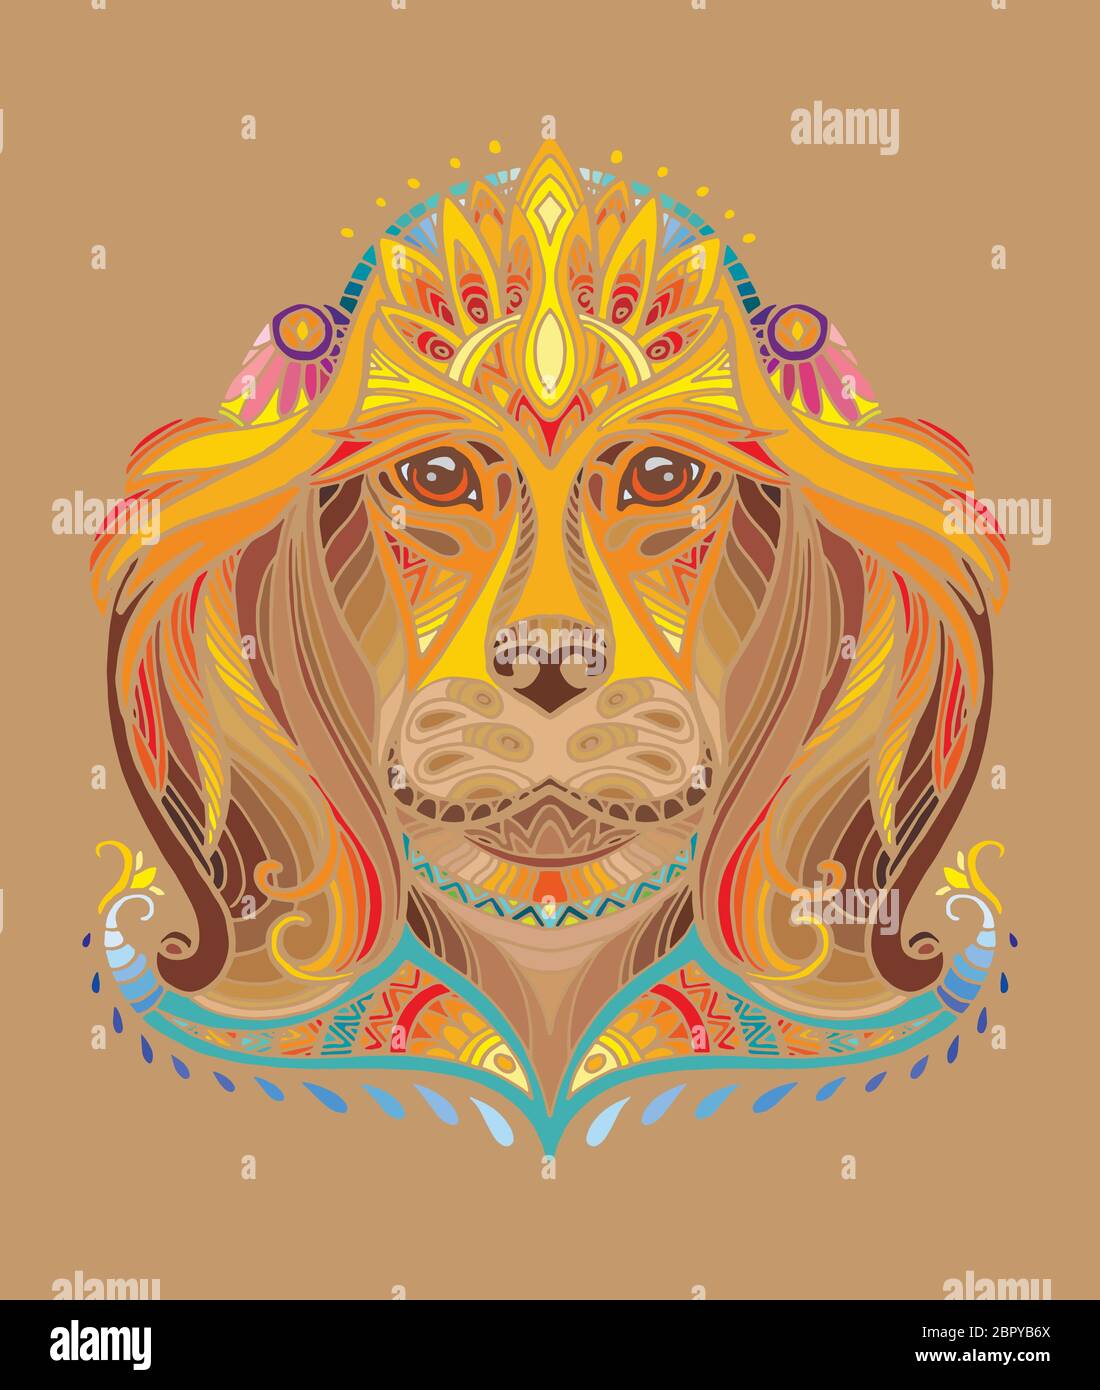 Vettore decorativo doodle testa ornamentale del cane. Vettore astratto colorato illustrazione della testa del cane isolato su sfondo marrone. Illustrazione del magazzino per Illustrazione Vettoriale